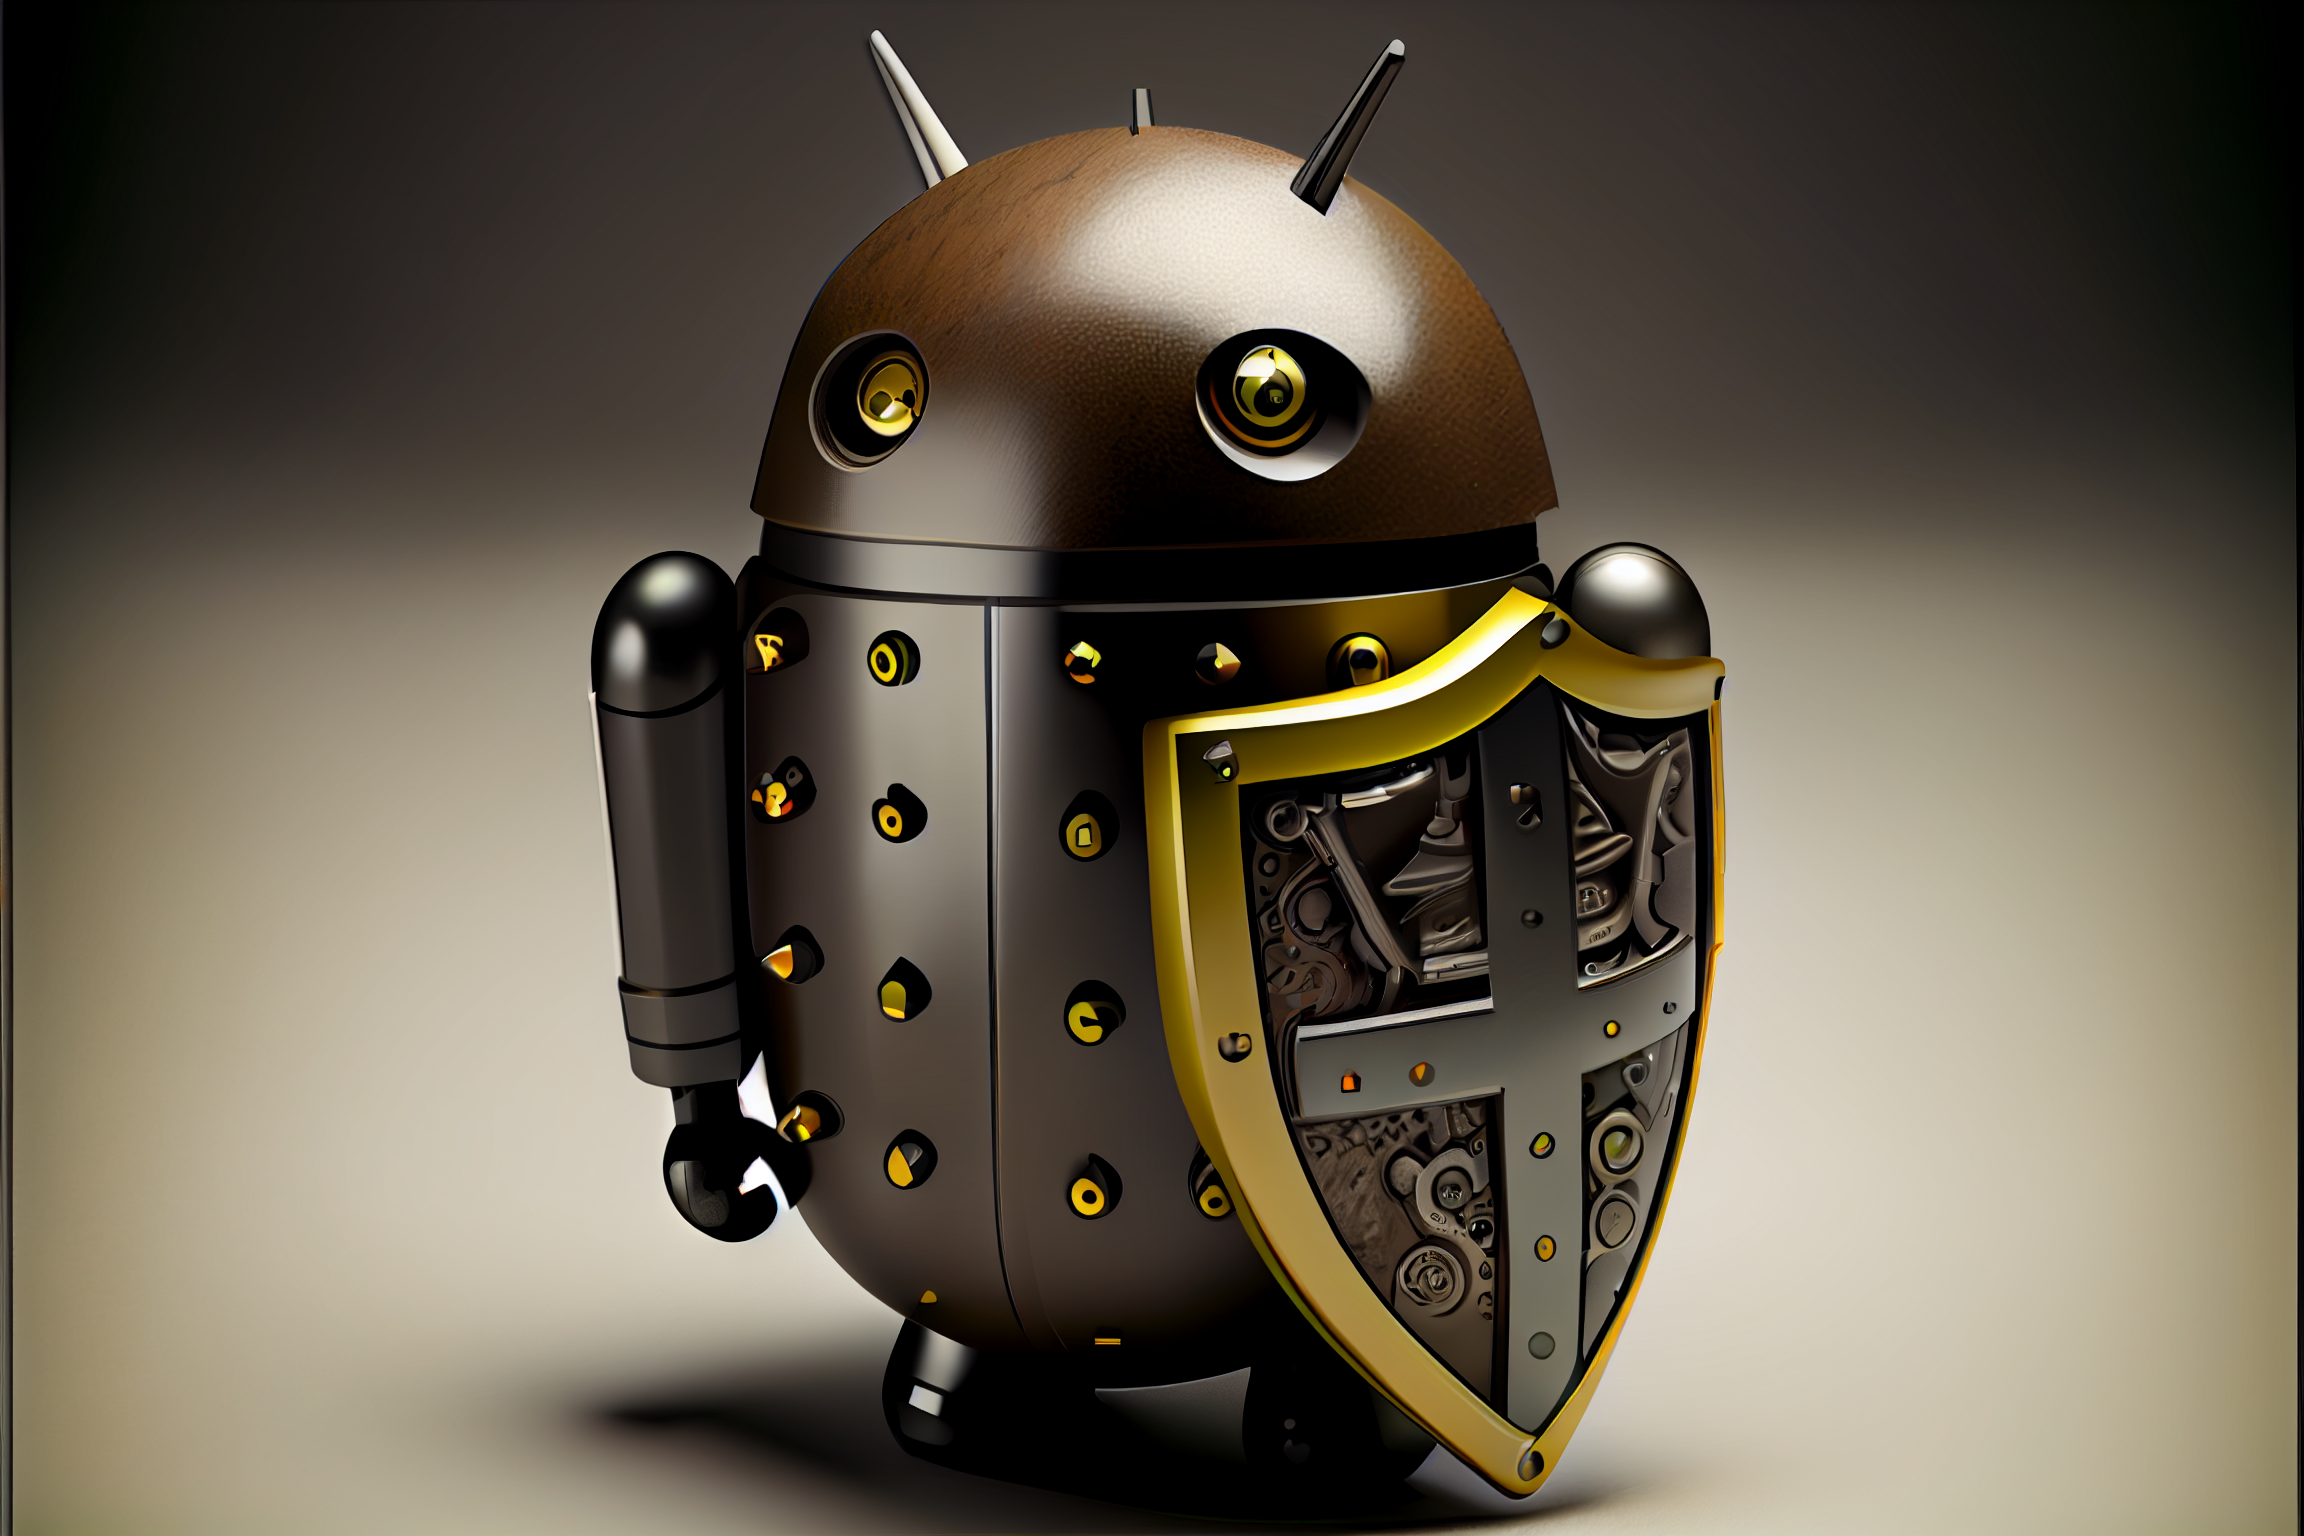 Komplett neu: Erster Blick auf AdGuard v4.0 für Android Nightly